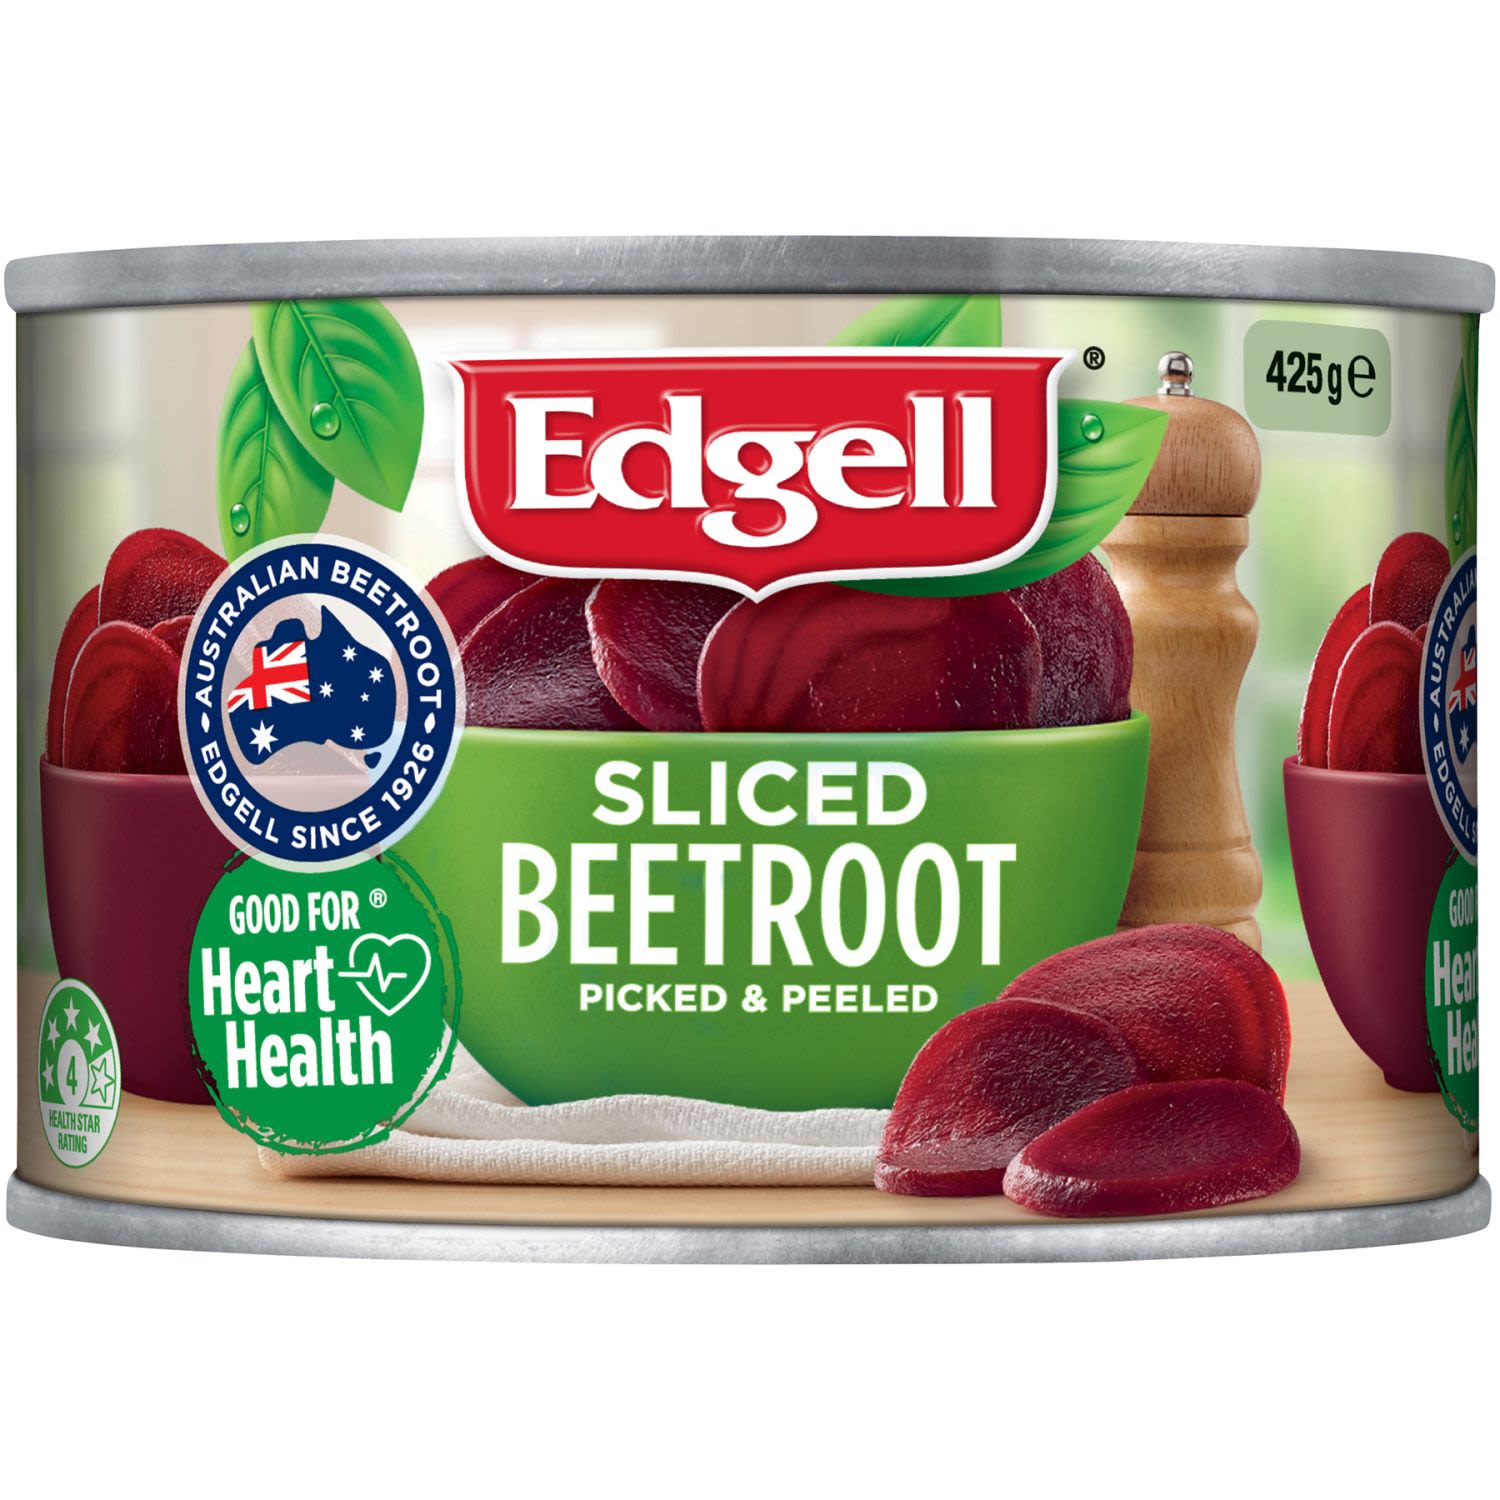 Edgell Sliced Beetroot, 425 Gram